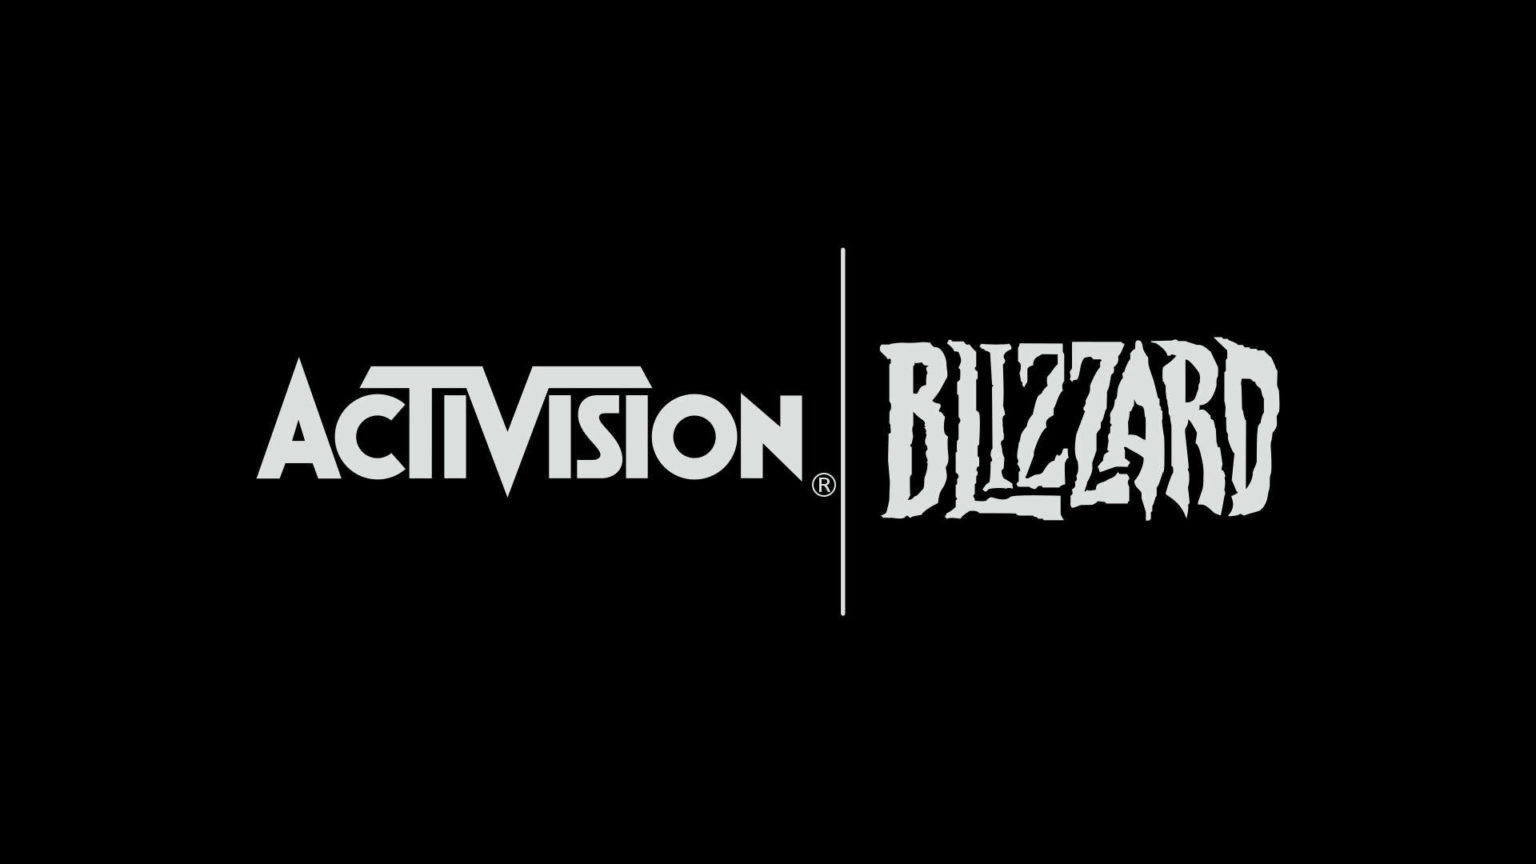 logo d'Activision Blizzard 18809 1536x864 1